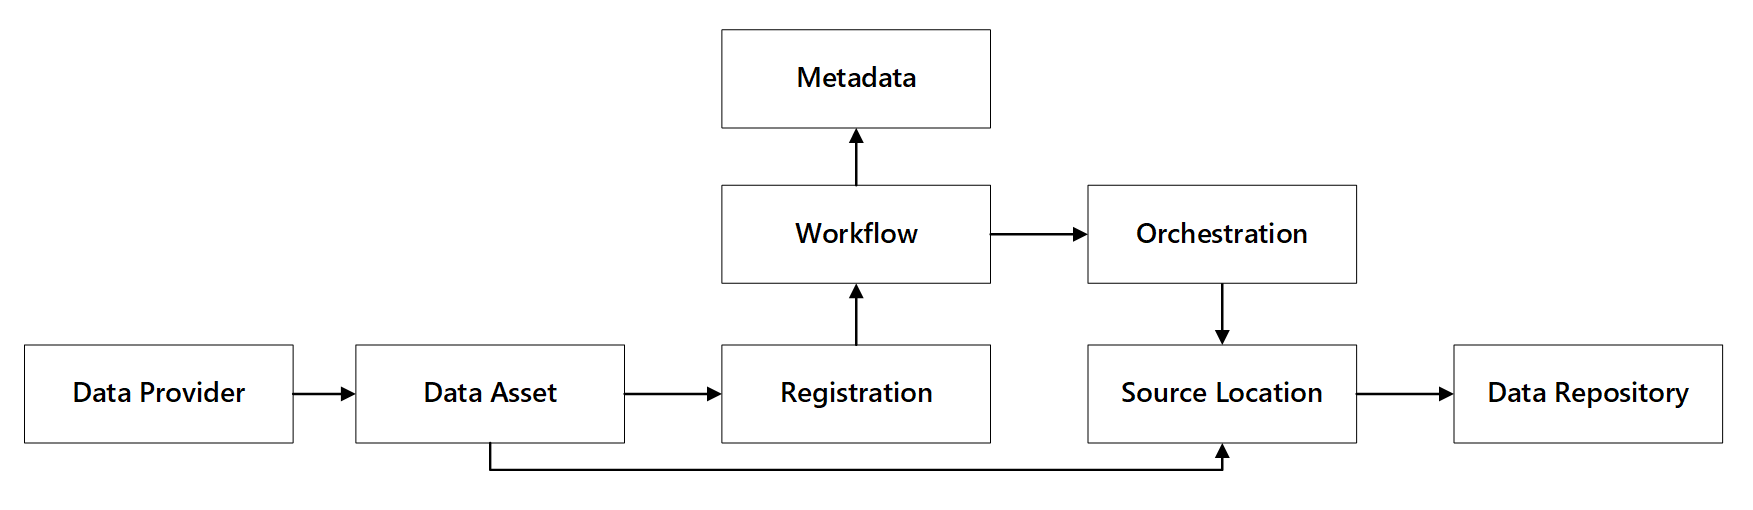 Veri kaydı özellikleri ve etkileşimleri diyagramı